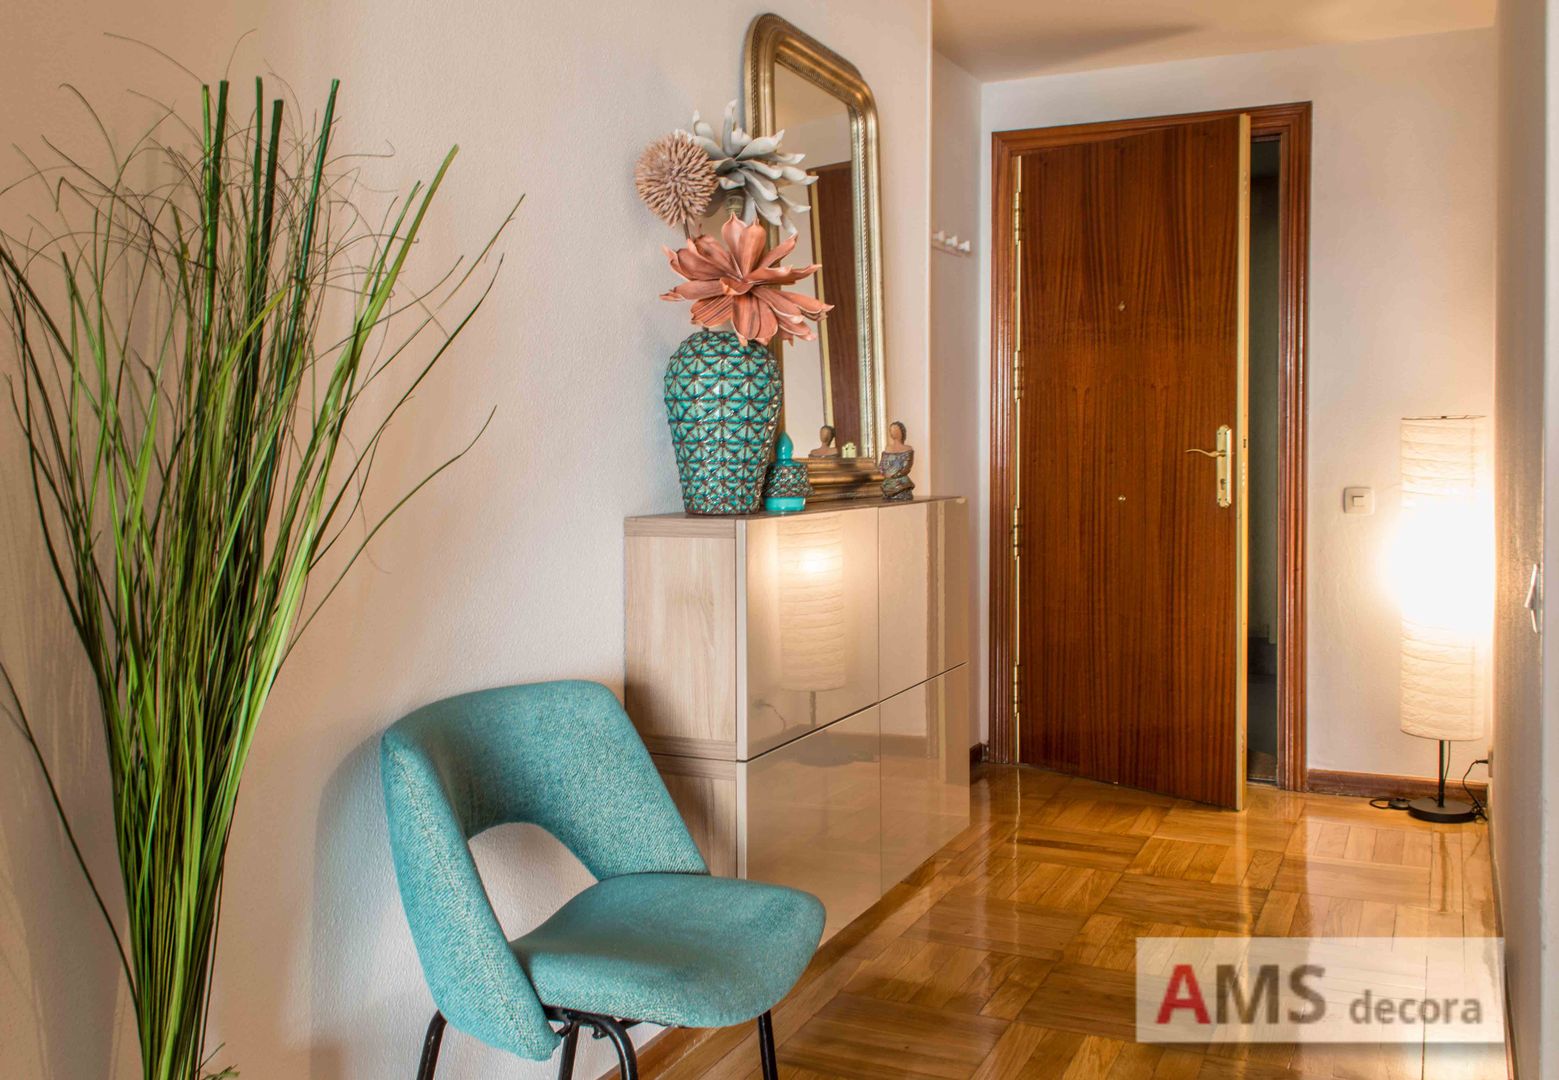 Redecoración de Piso: Un ambiente completamente hogareño y cálido, AMS decora AMS decora モダンスタイルの 玄関&廊下&階段 収納